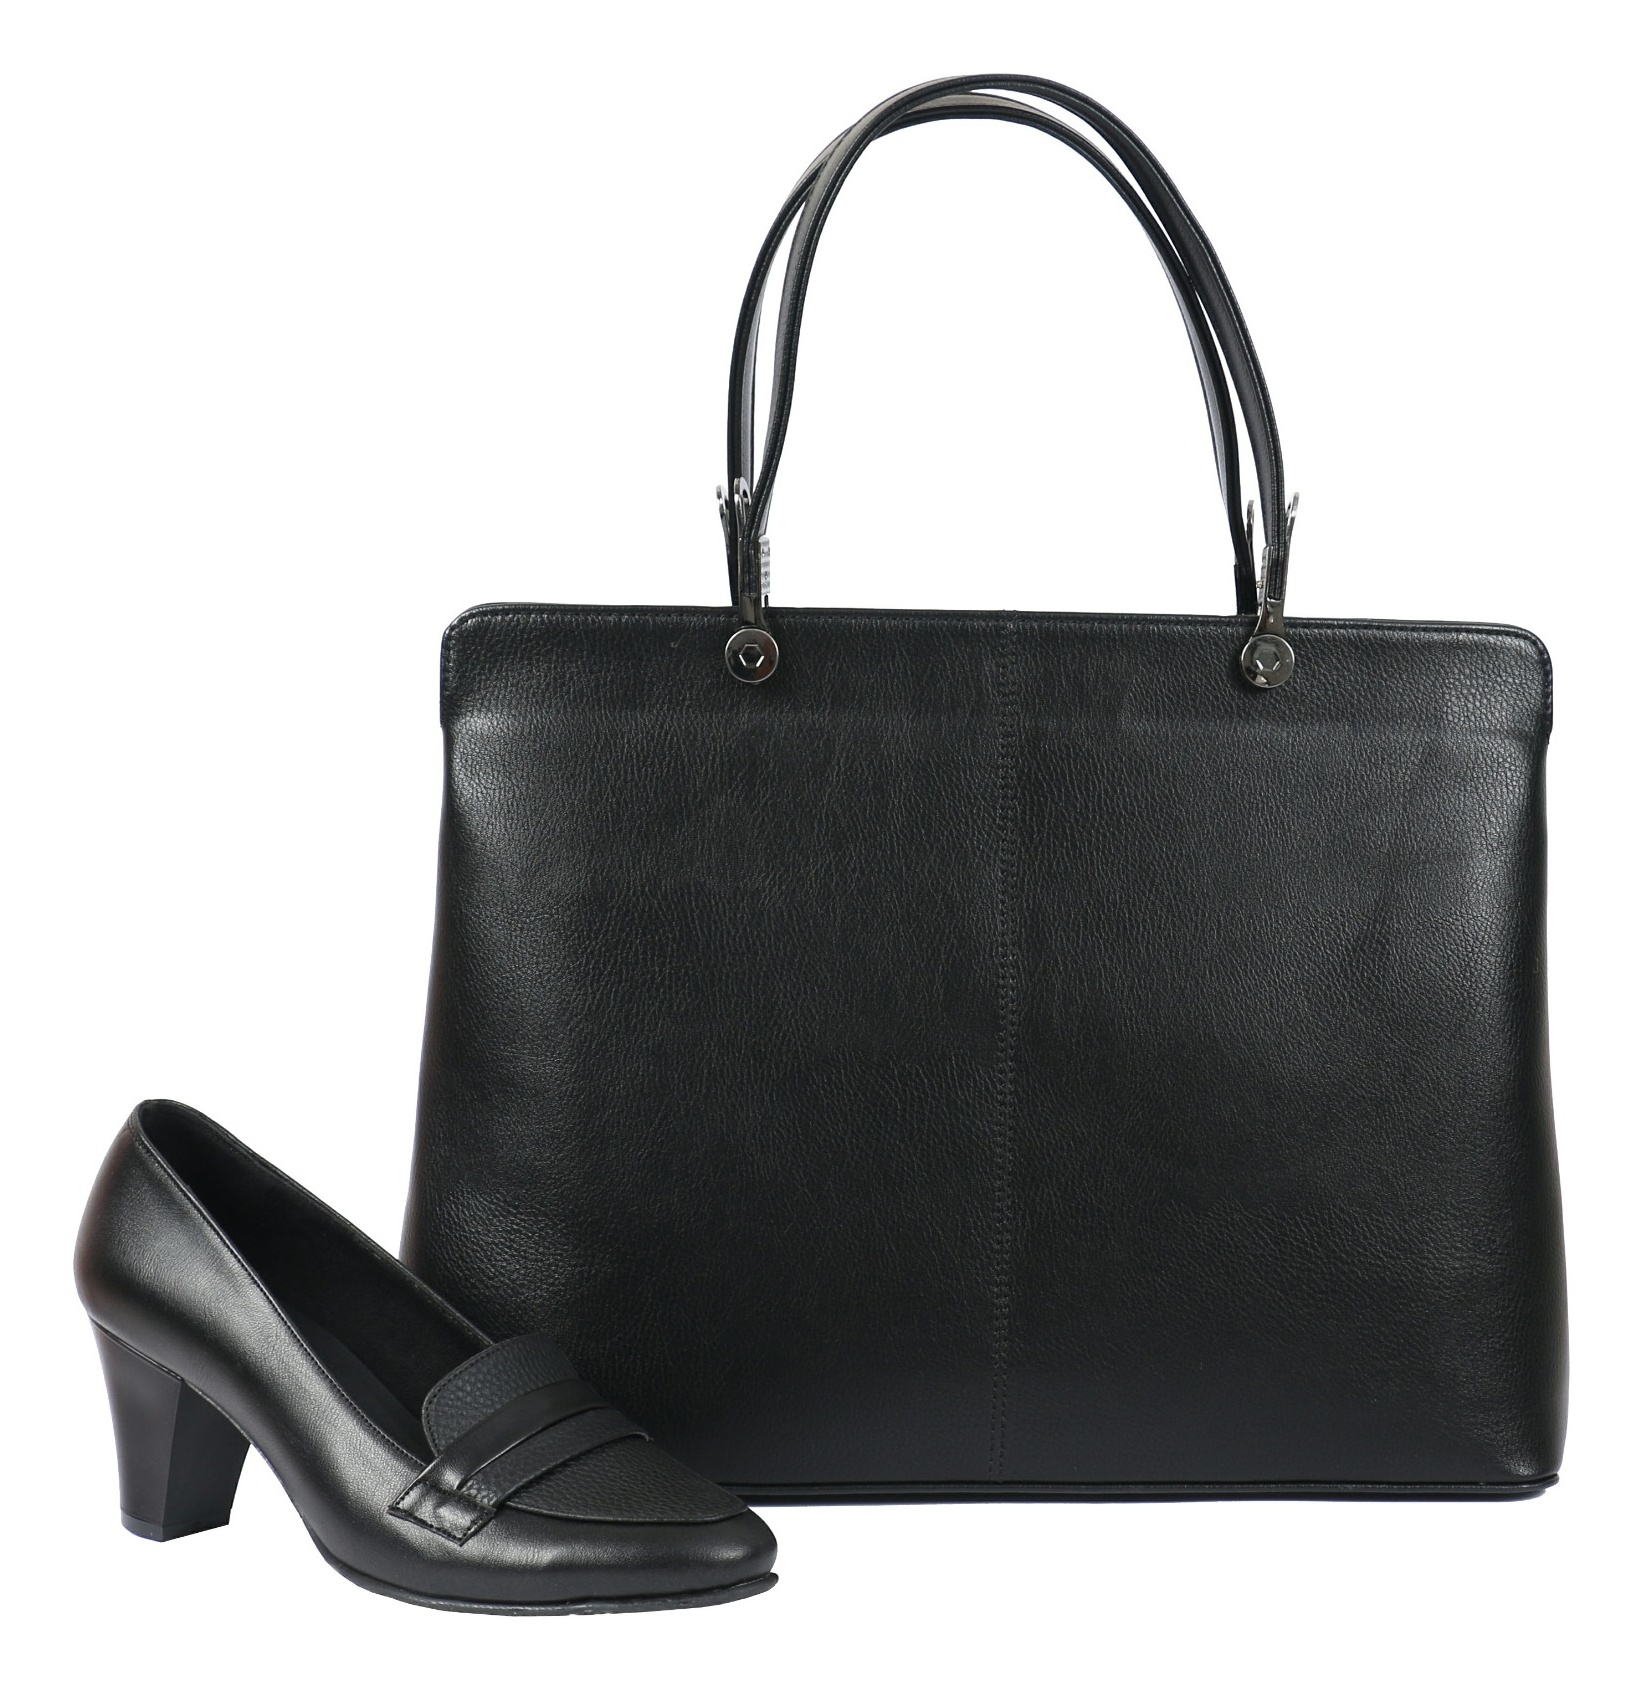 ست کیف و کفش زنانه ساینا چرم مدل سورنا